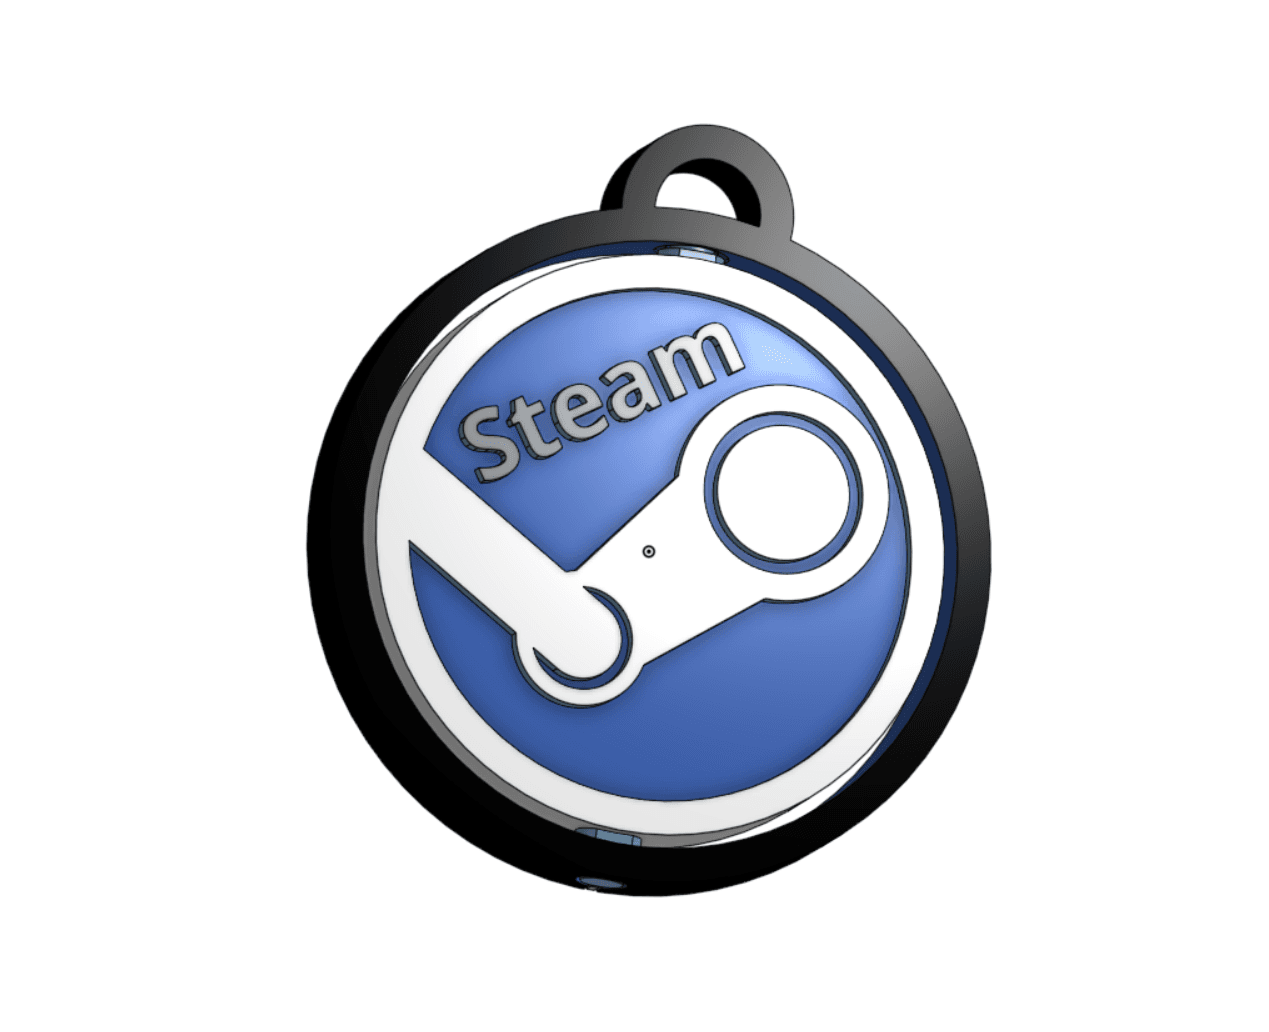 Steam™ logo inspired keychain  3d model